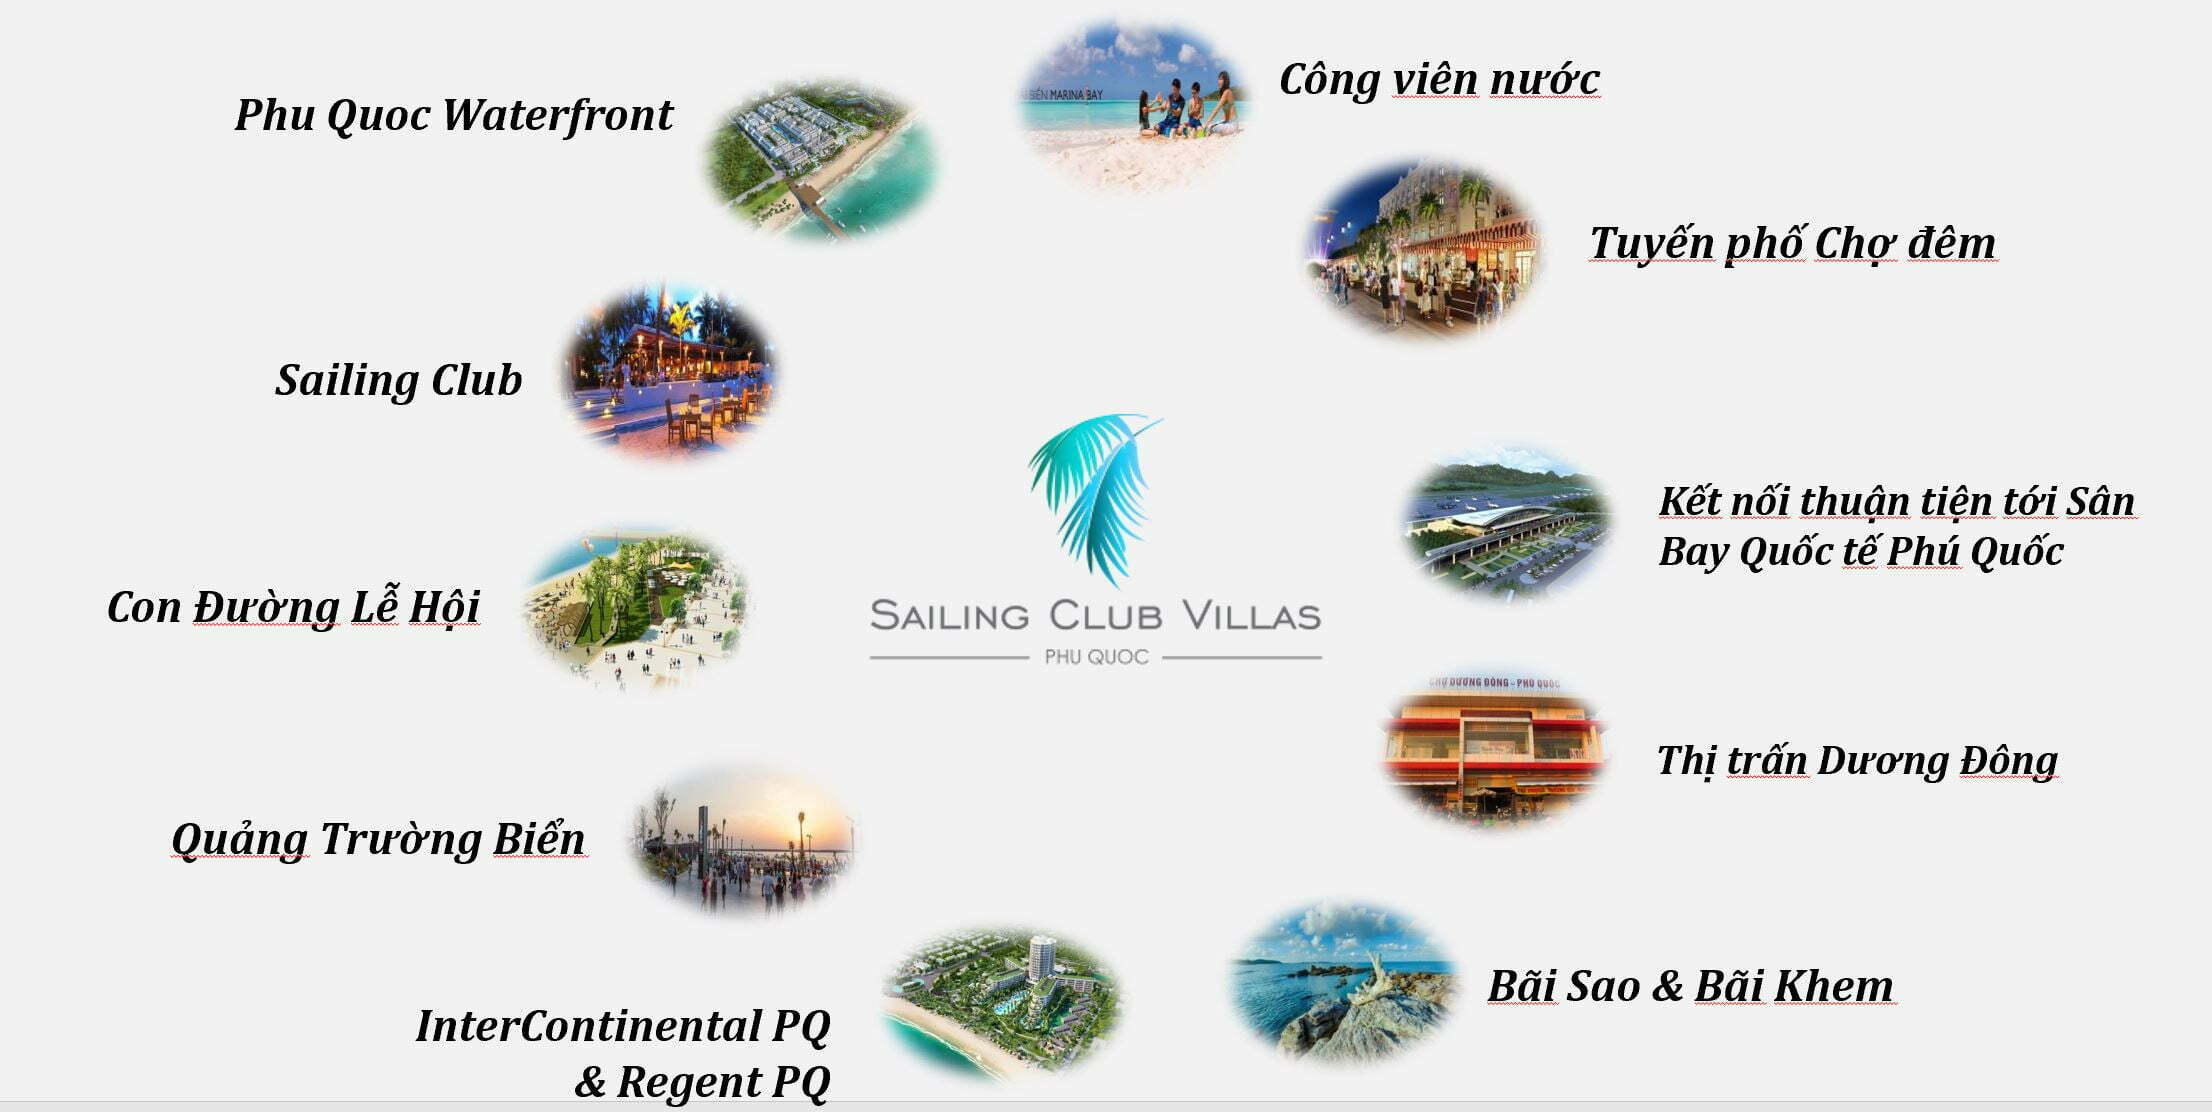 Sailing Club Villas Phu Quoc – Không chỉ là đầu tư mà còn là cách để tận hưởng cuộc sống